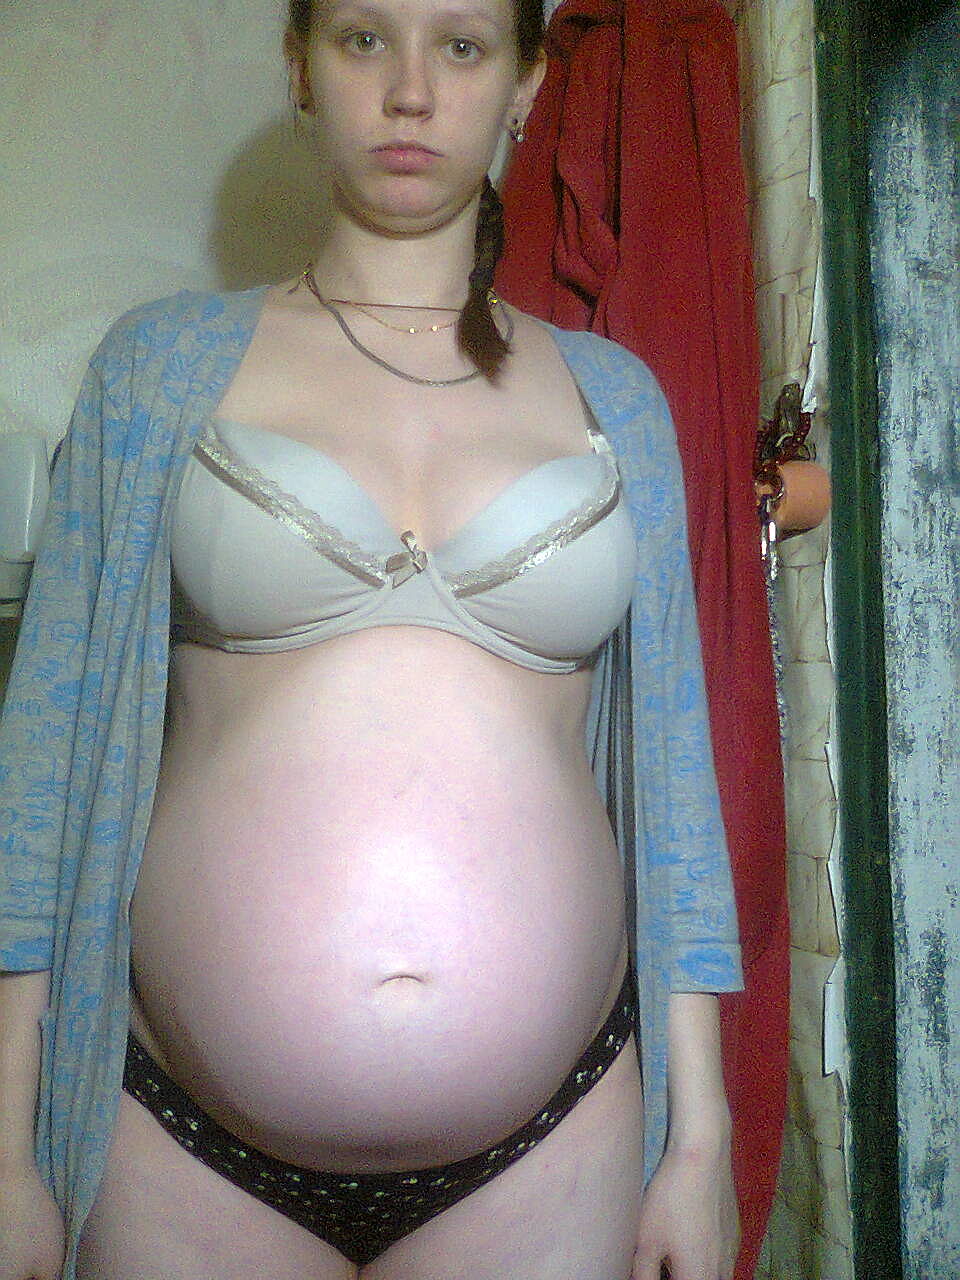 беременности нет а грудь набухла почему фото 45